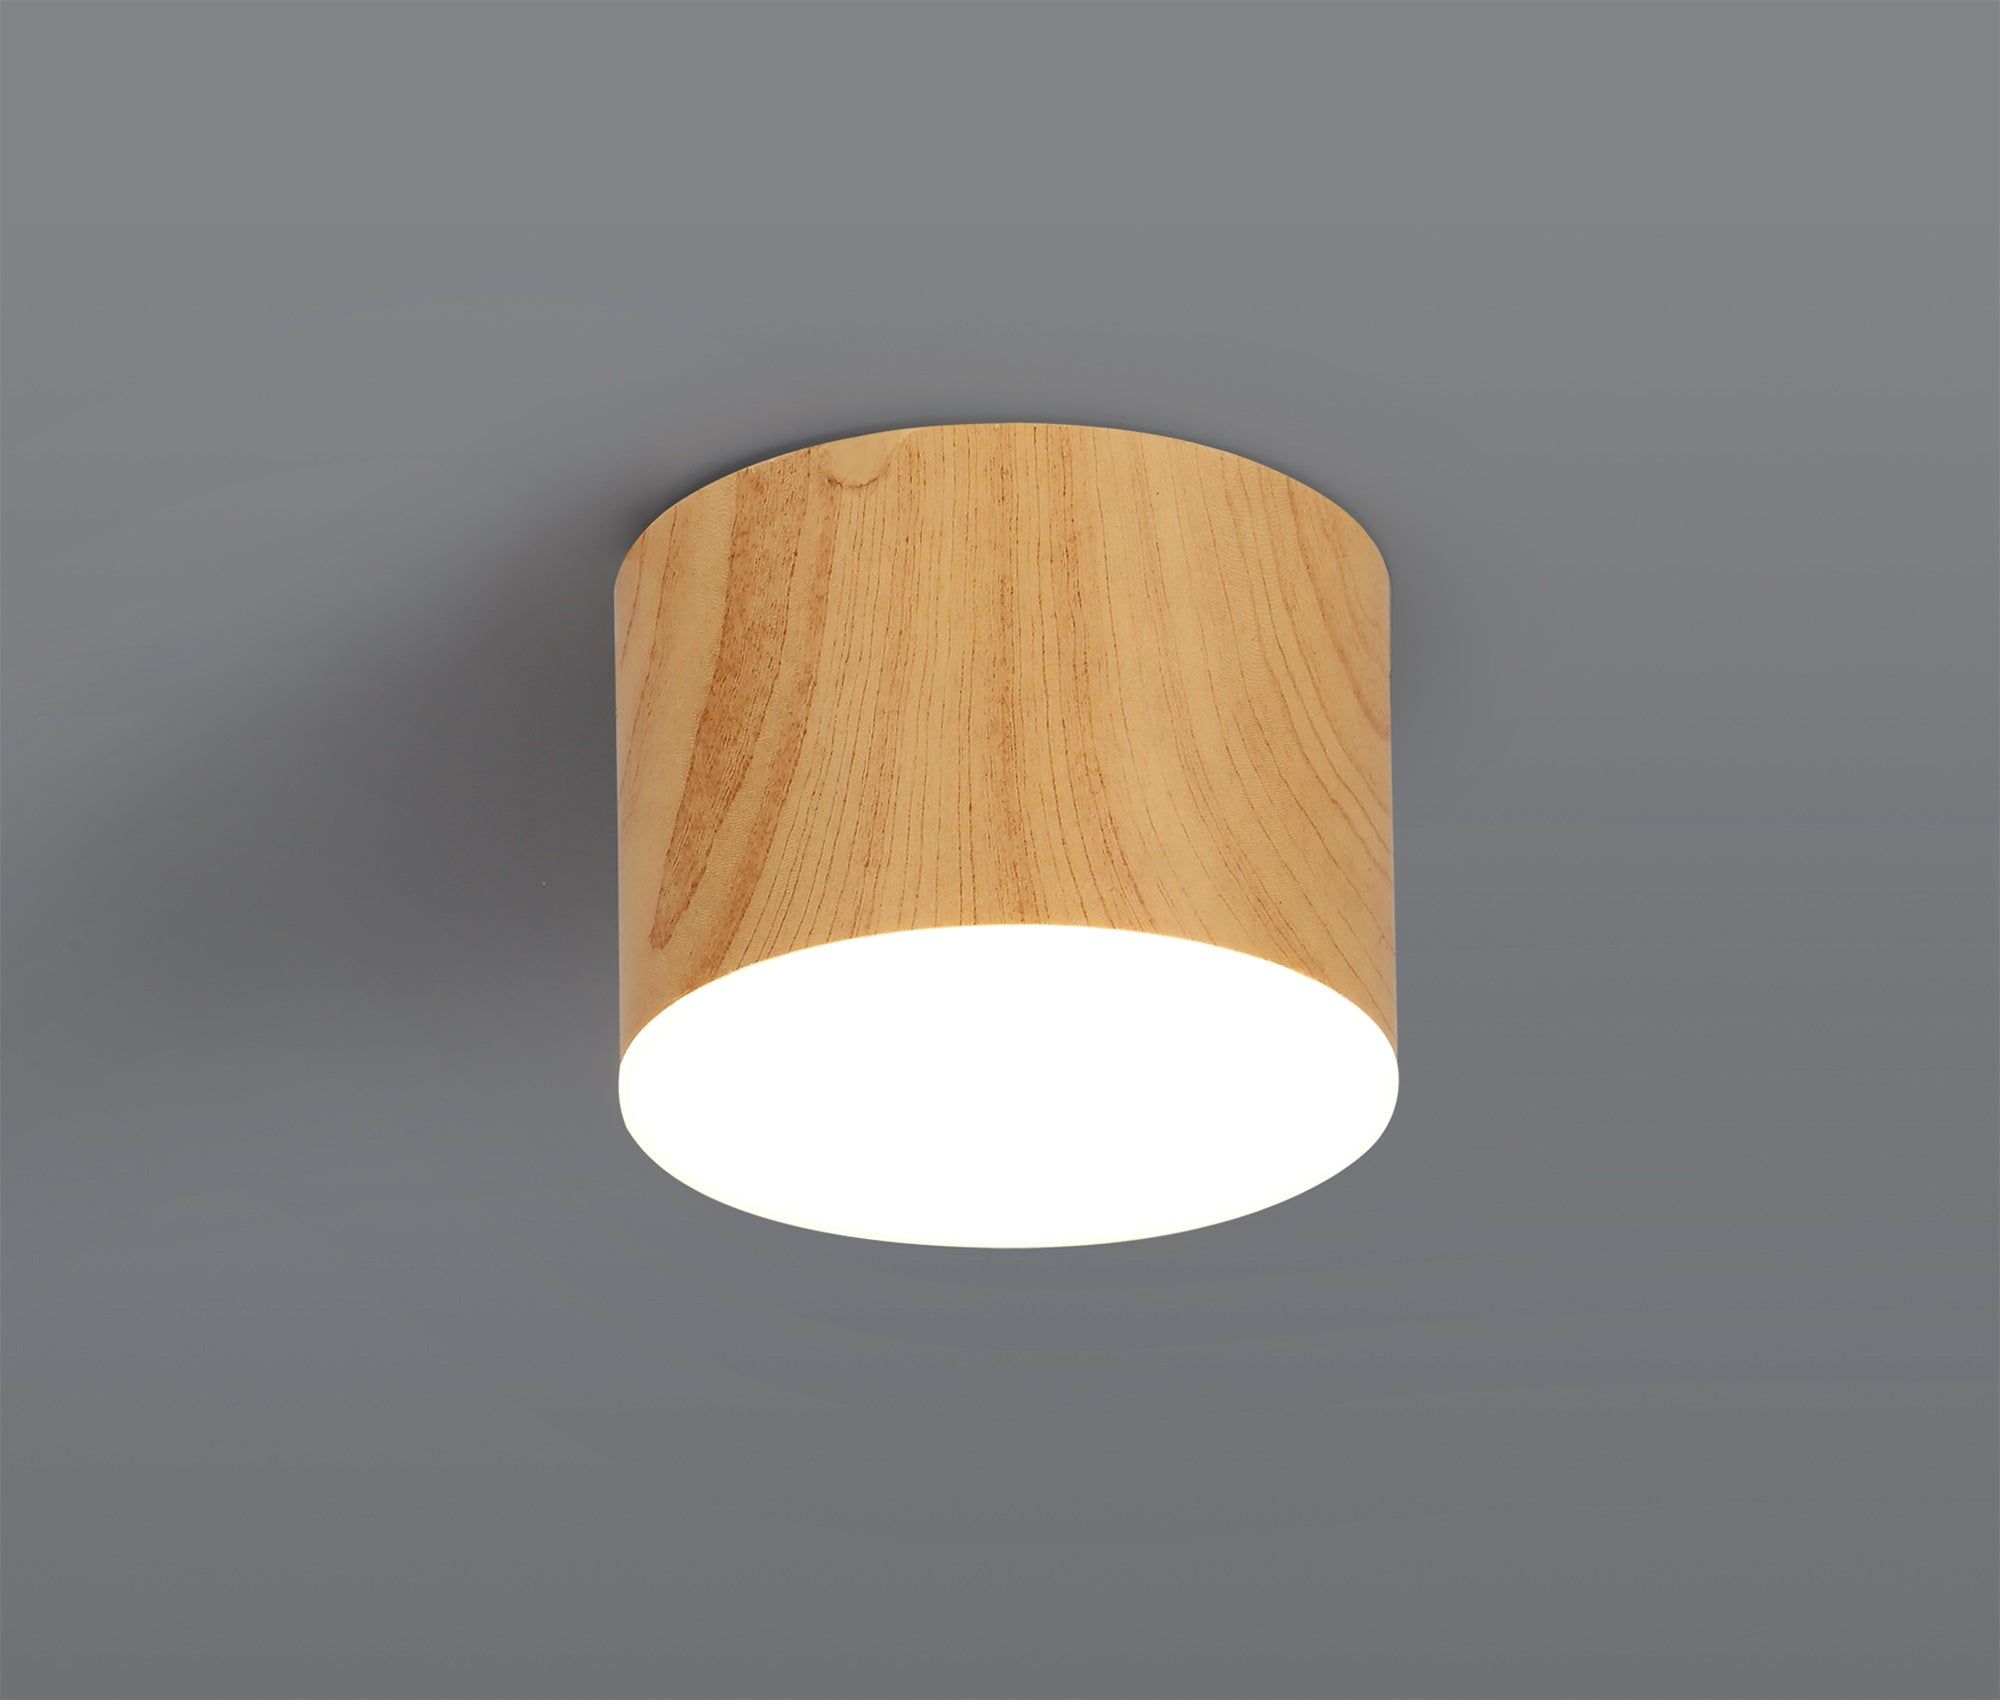 Aibers Spotlight 10.5cm Round 1 x 10W LED, 3000K, 700lm, Pine Wood, 3yrs Warranty